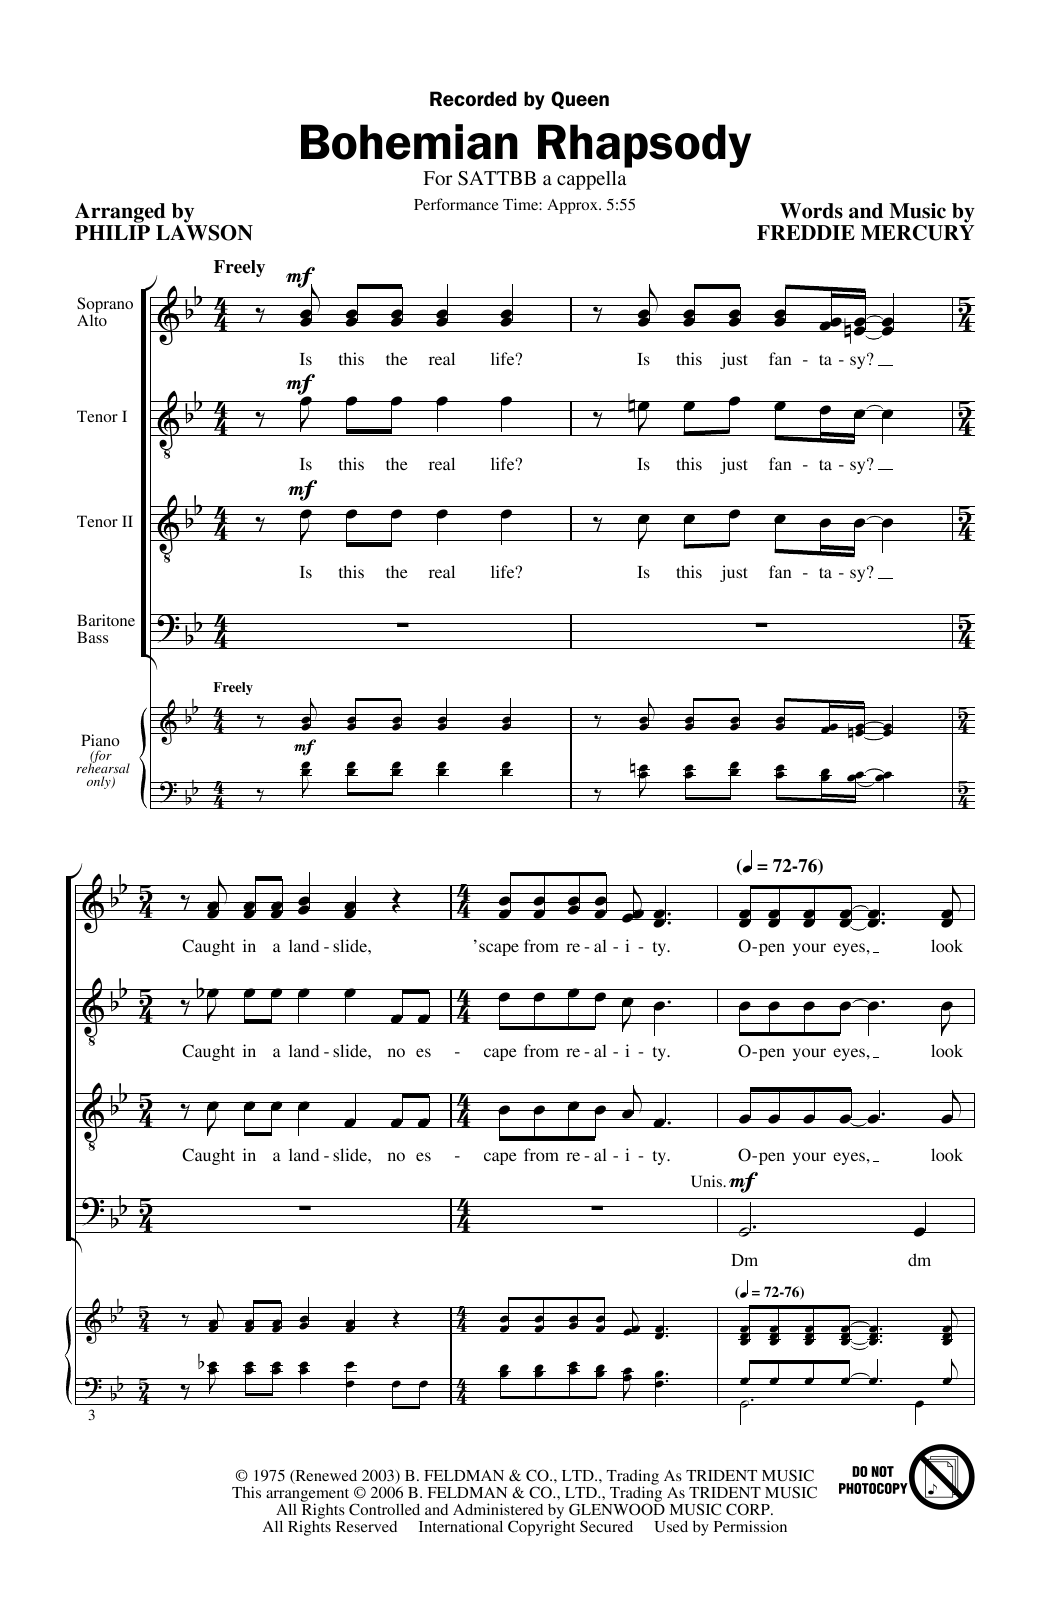 Queen Bohemian Rhapsody (arr. Philip Lawson) Sheet Music Notes & Chords for SATB Choir - Download or Print PDF